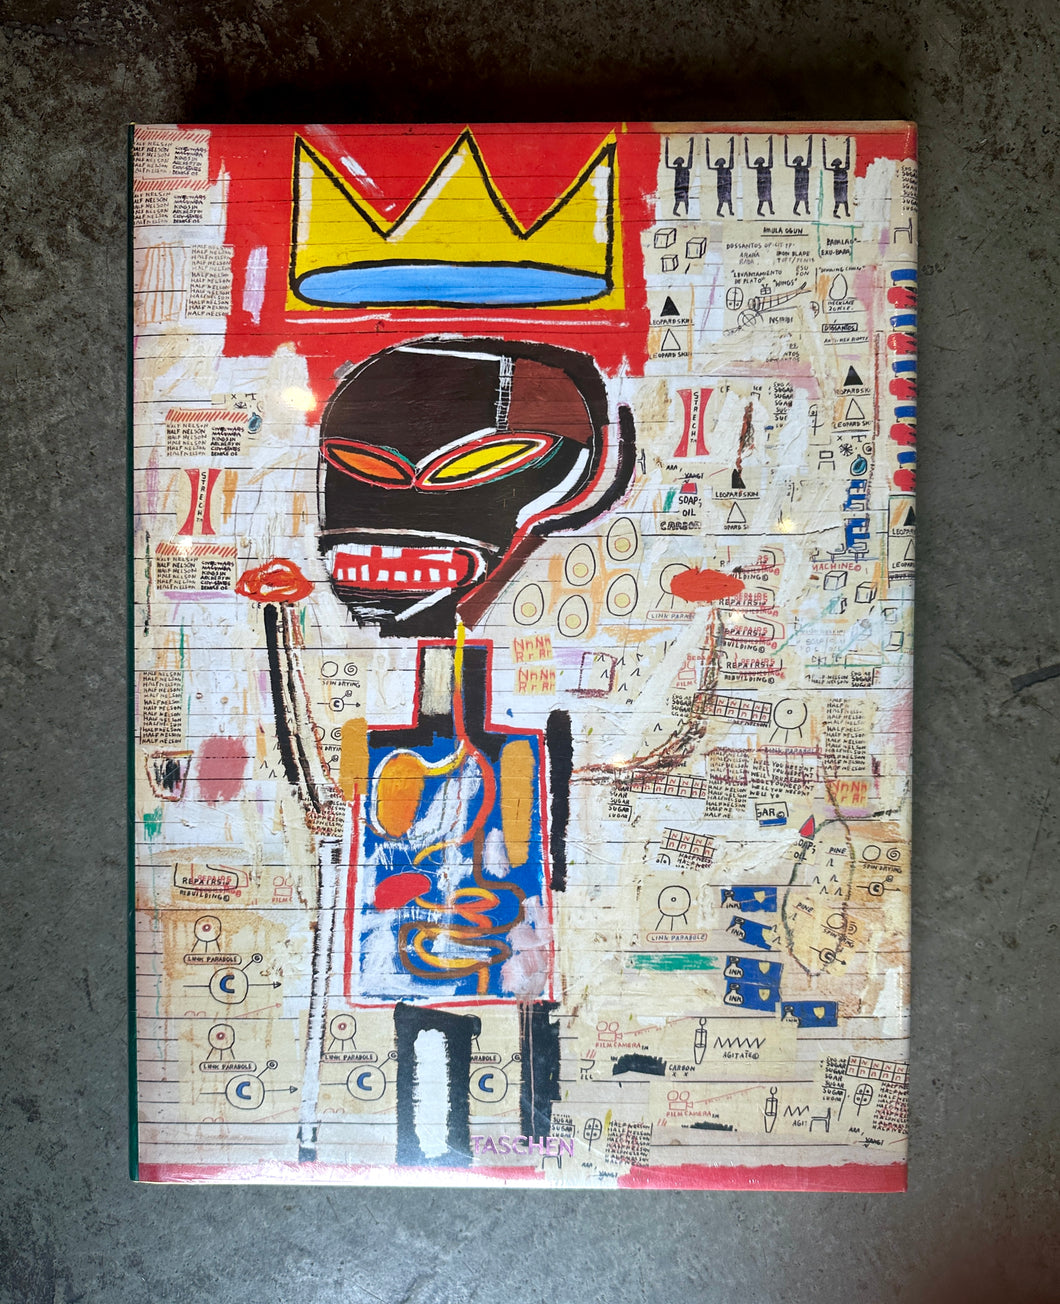 Jean-Michel Basquiat XXL Edition Taschen Hardcover Book